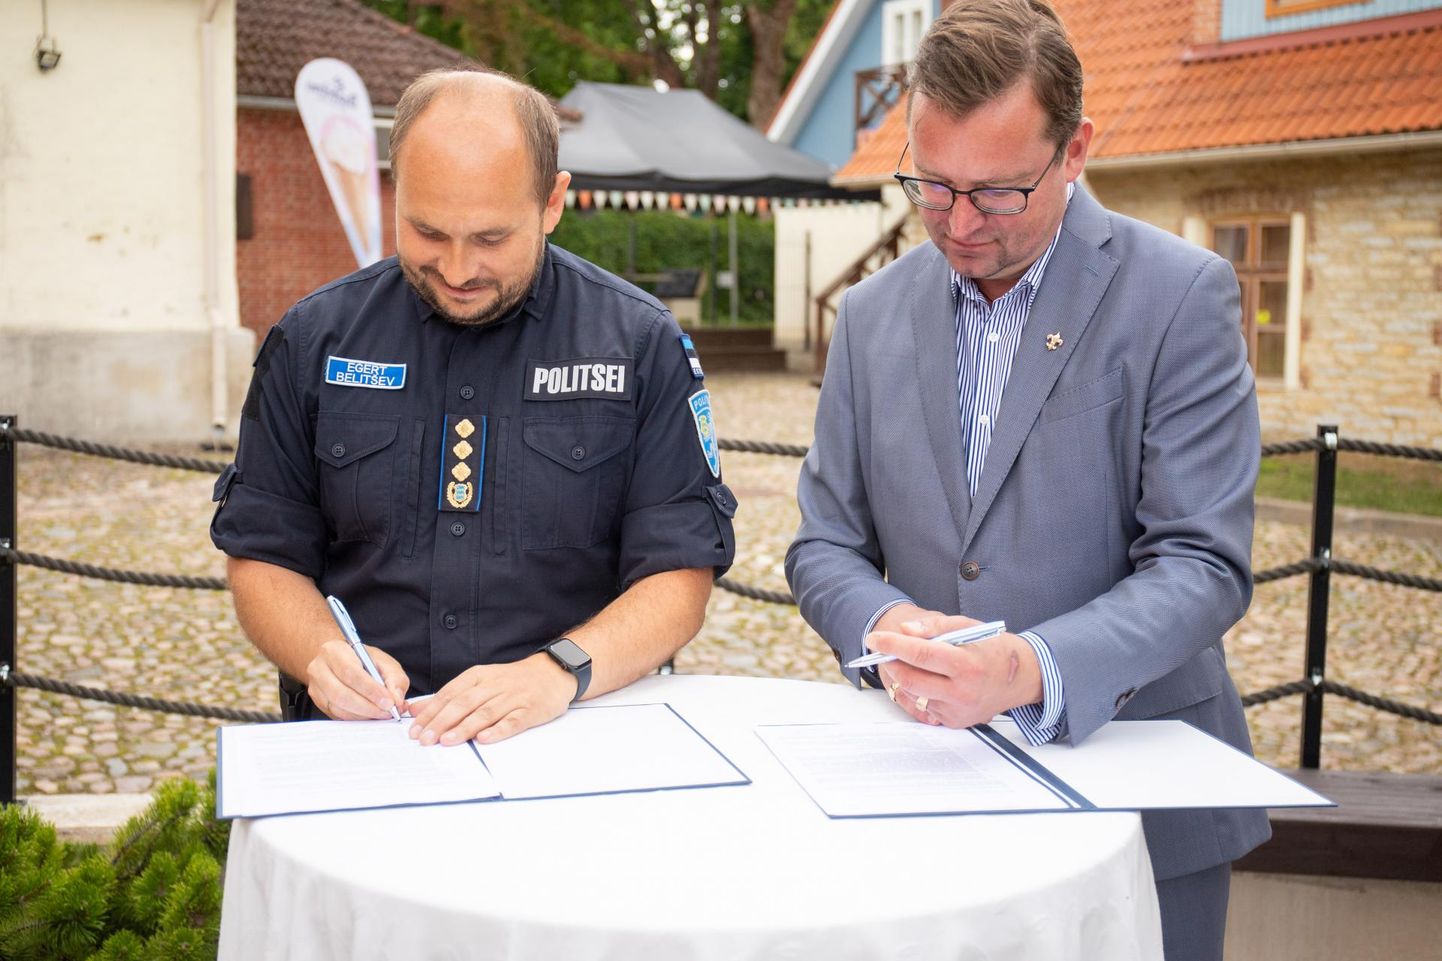 [18:50] Aleksander Kappi

Коллекция Музея полиции пополнилась униформой для уличных мероприятий генерального директора Департамента полиции и пограничной охраны.